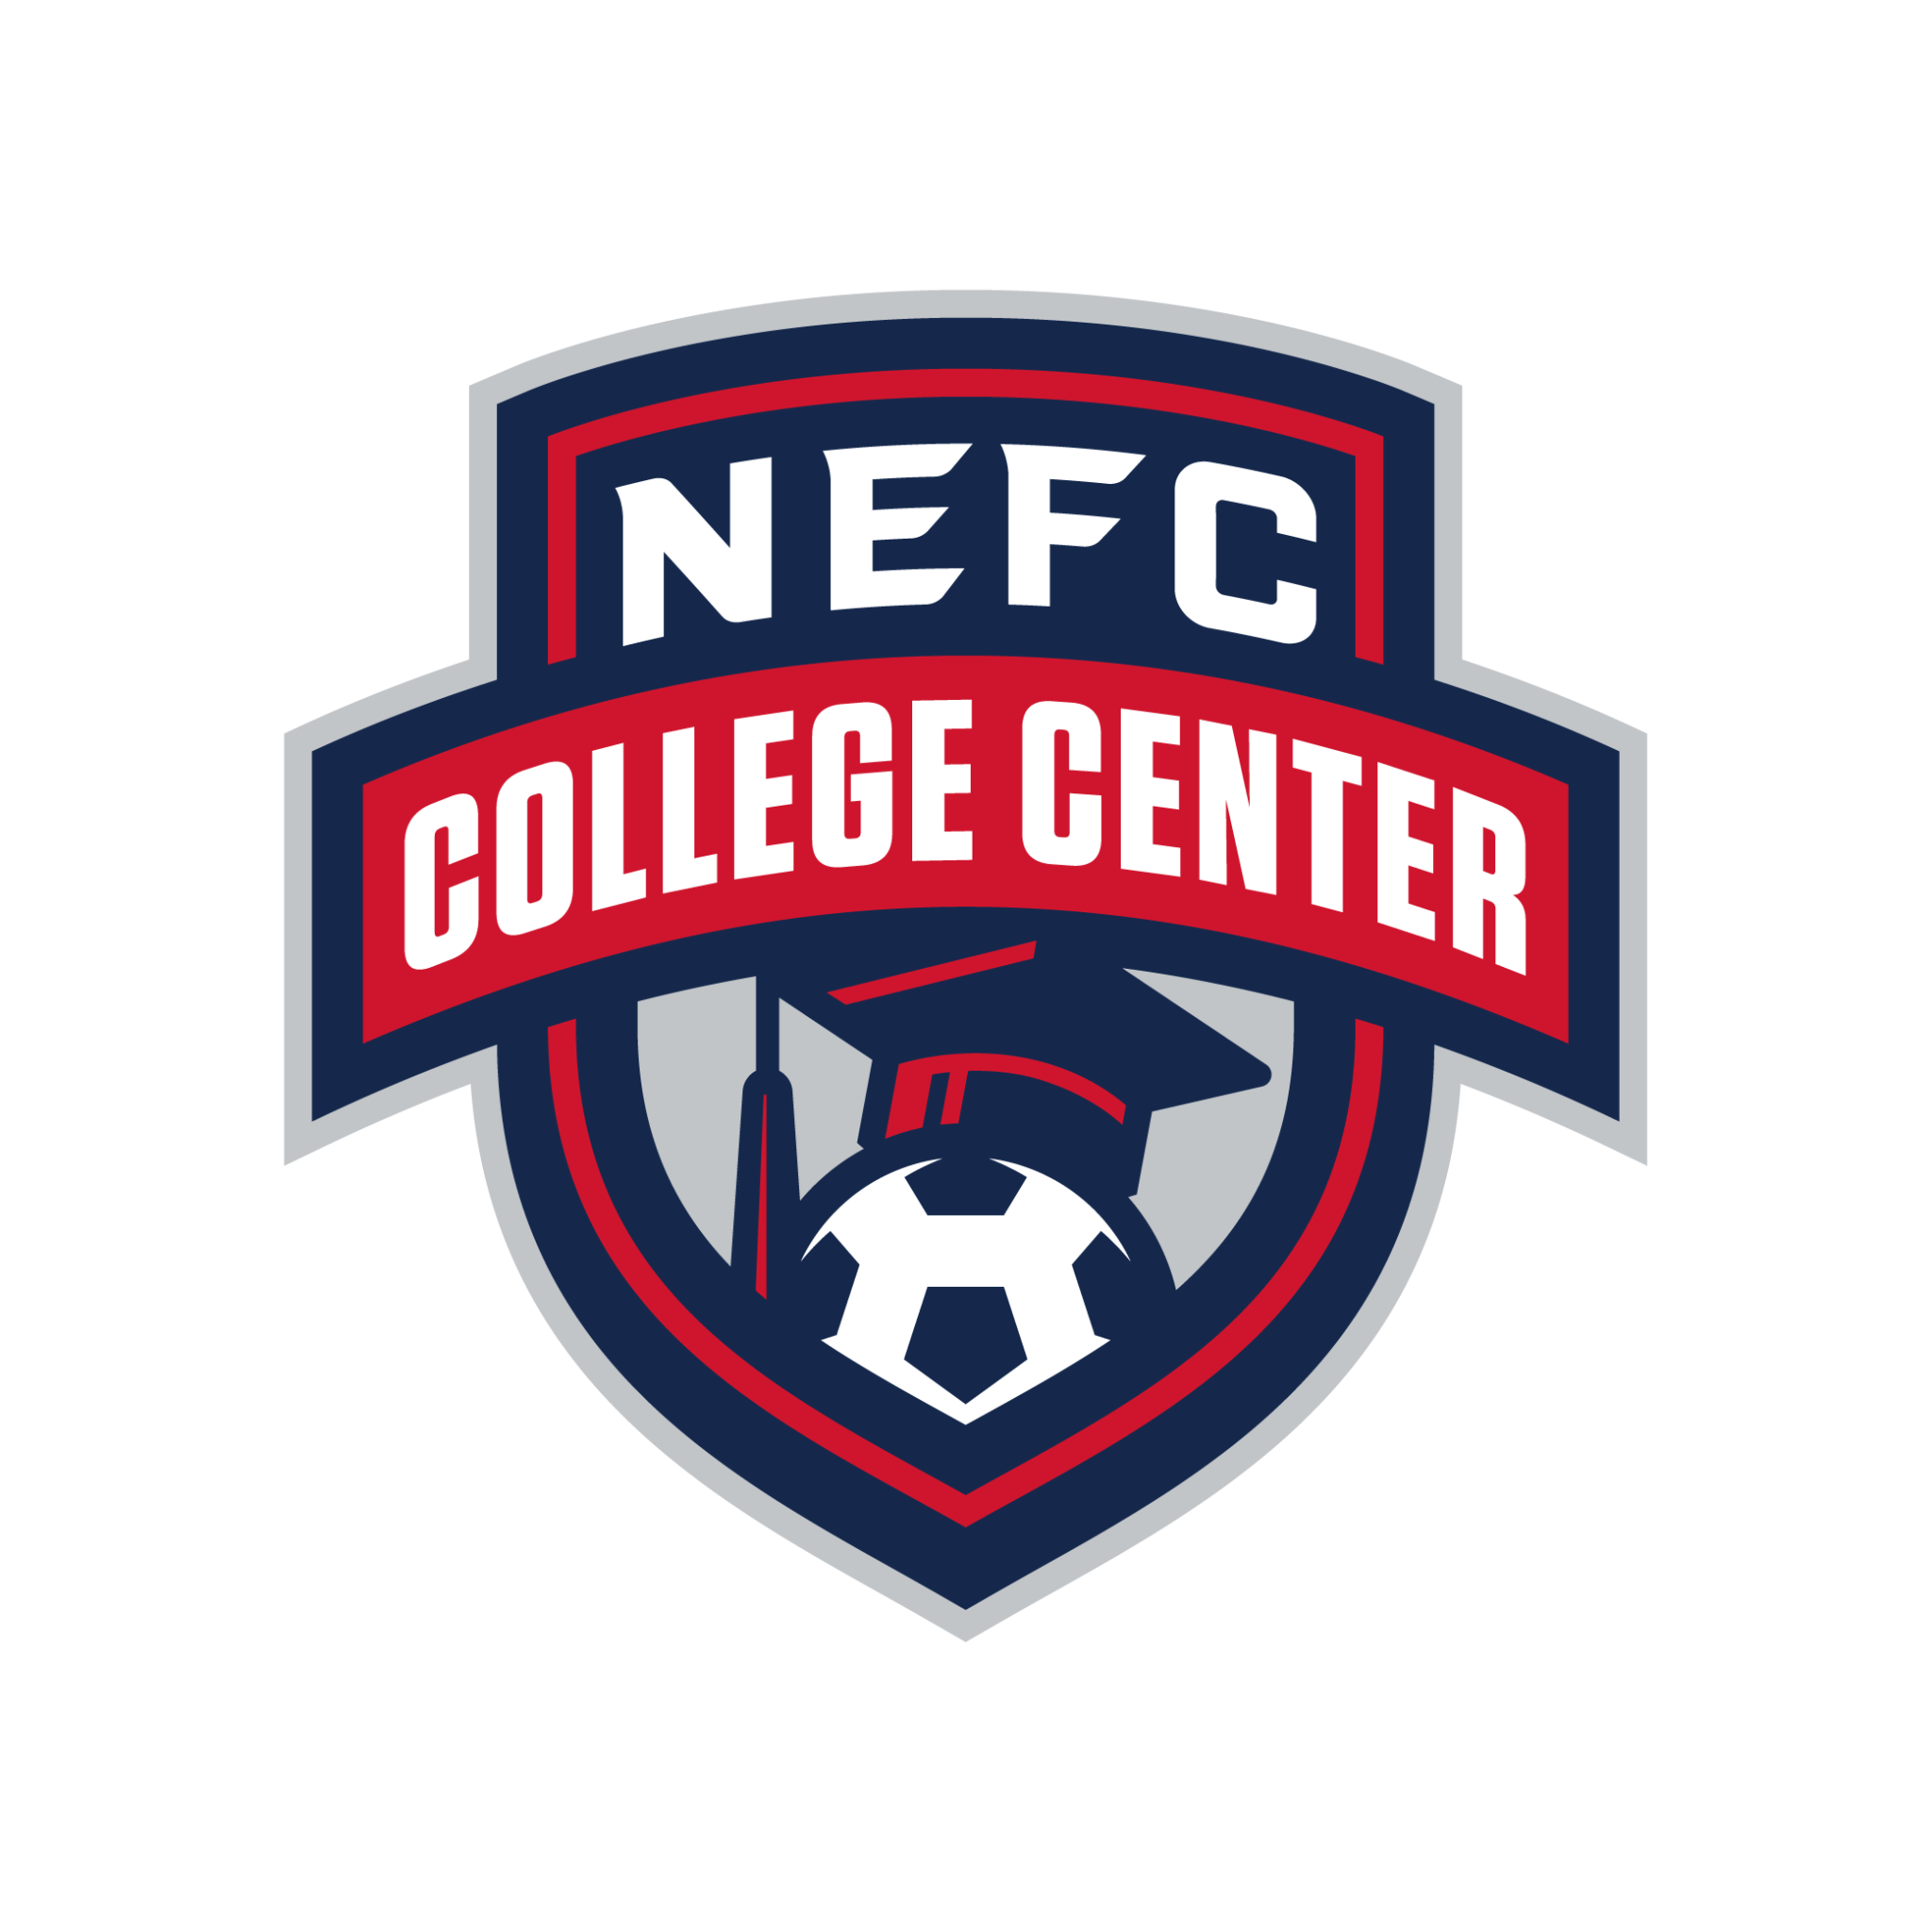 College Center NEFC